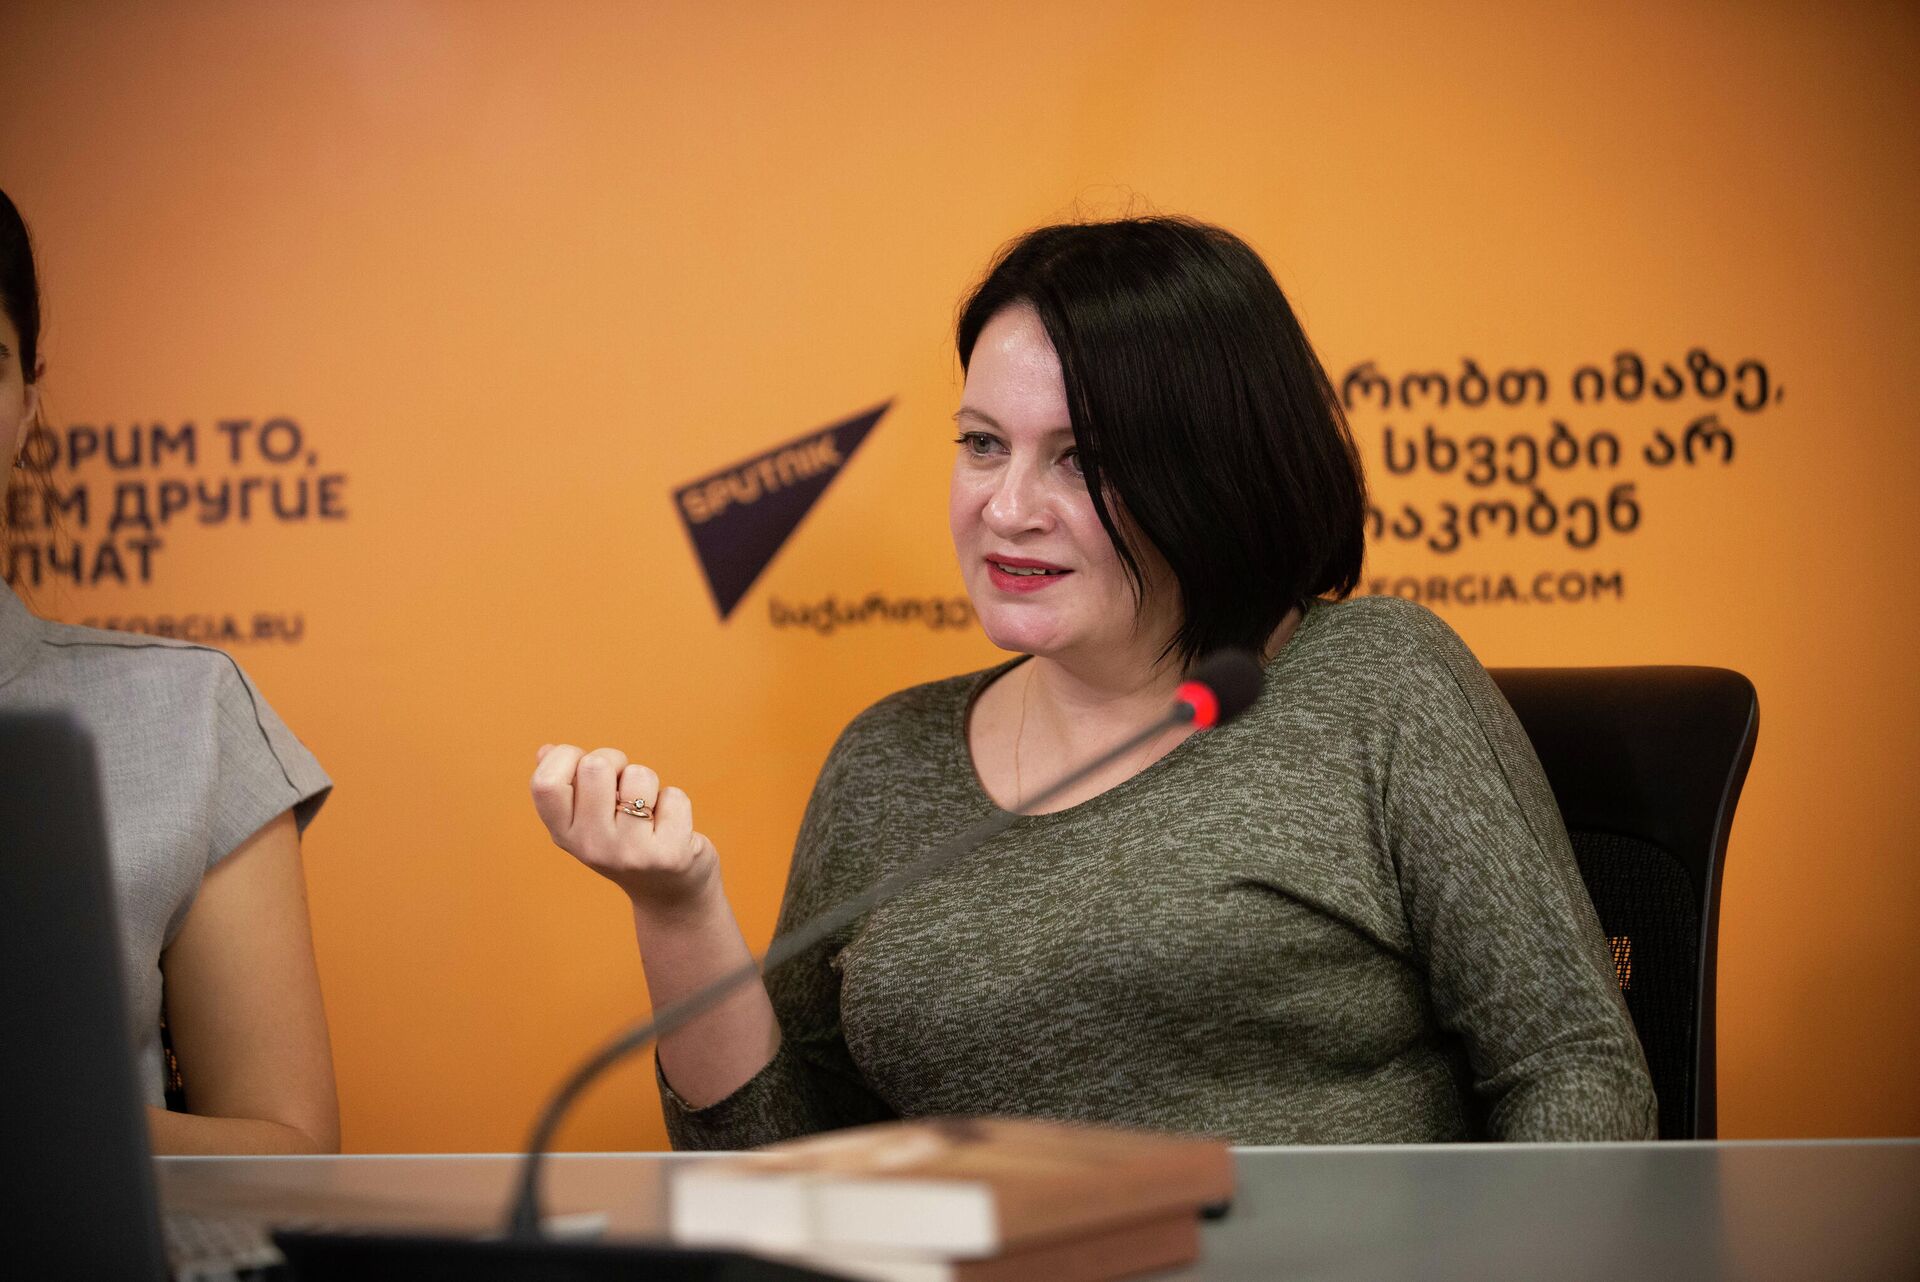 Анастасия Хатиашвили - Писательница и колумнист Sputnik Грузия  - Sputnik Грузия, 1920, 25.11.2021